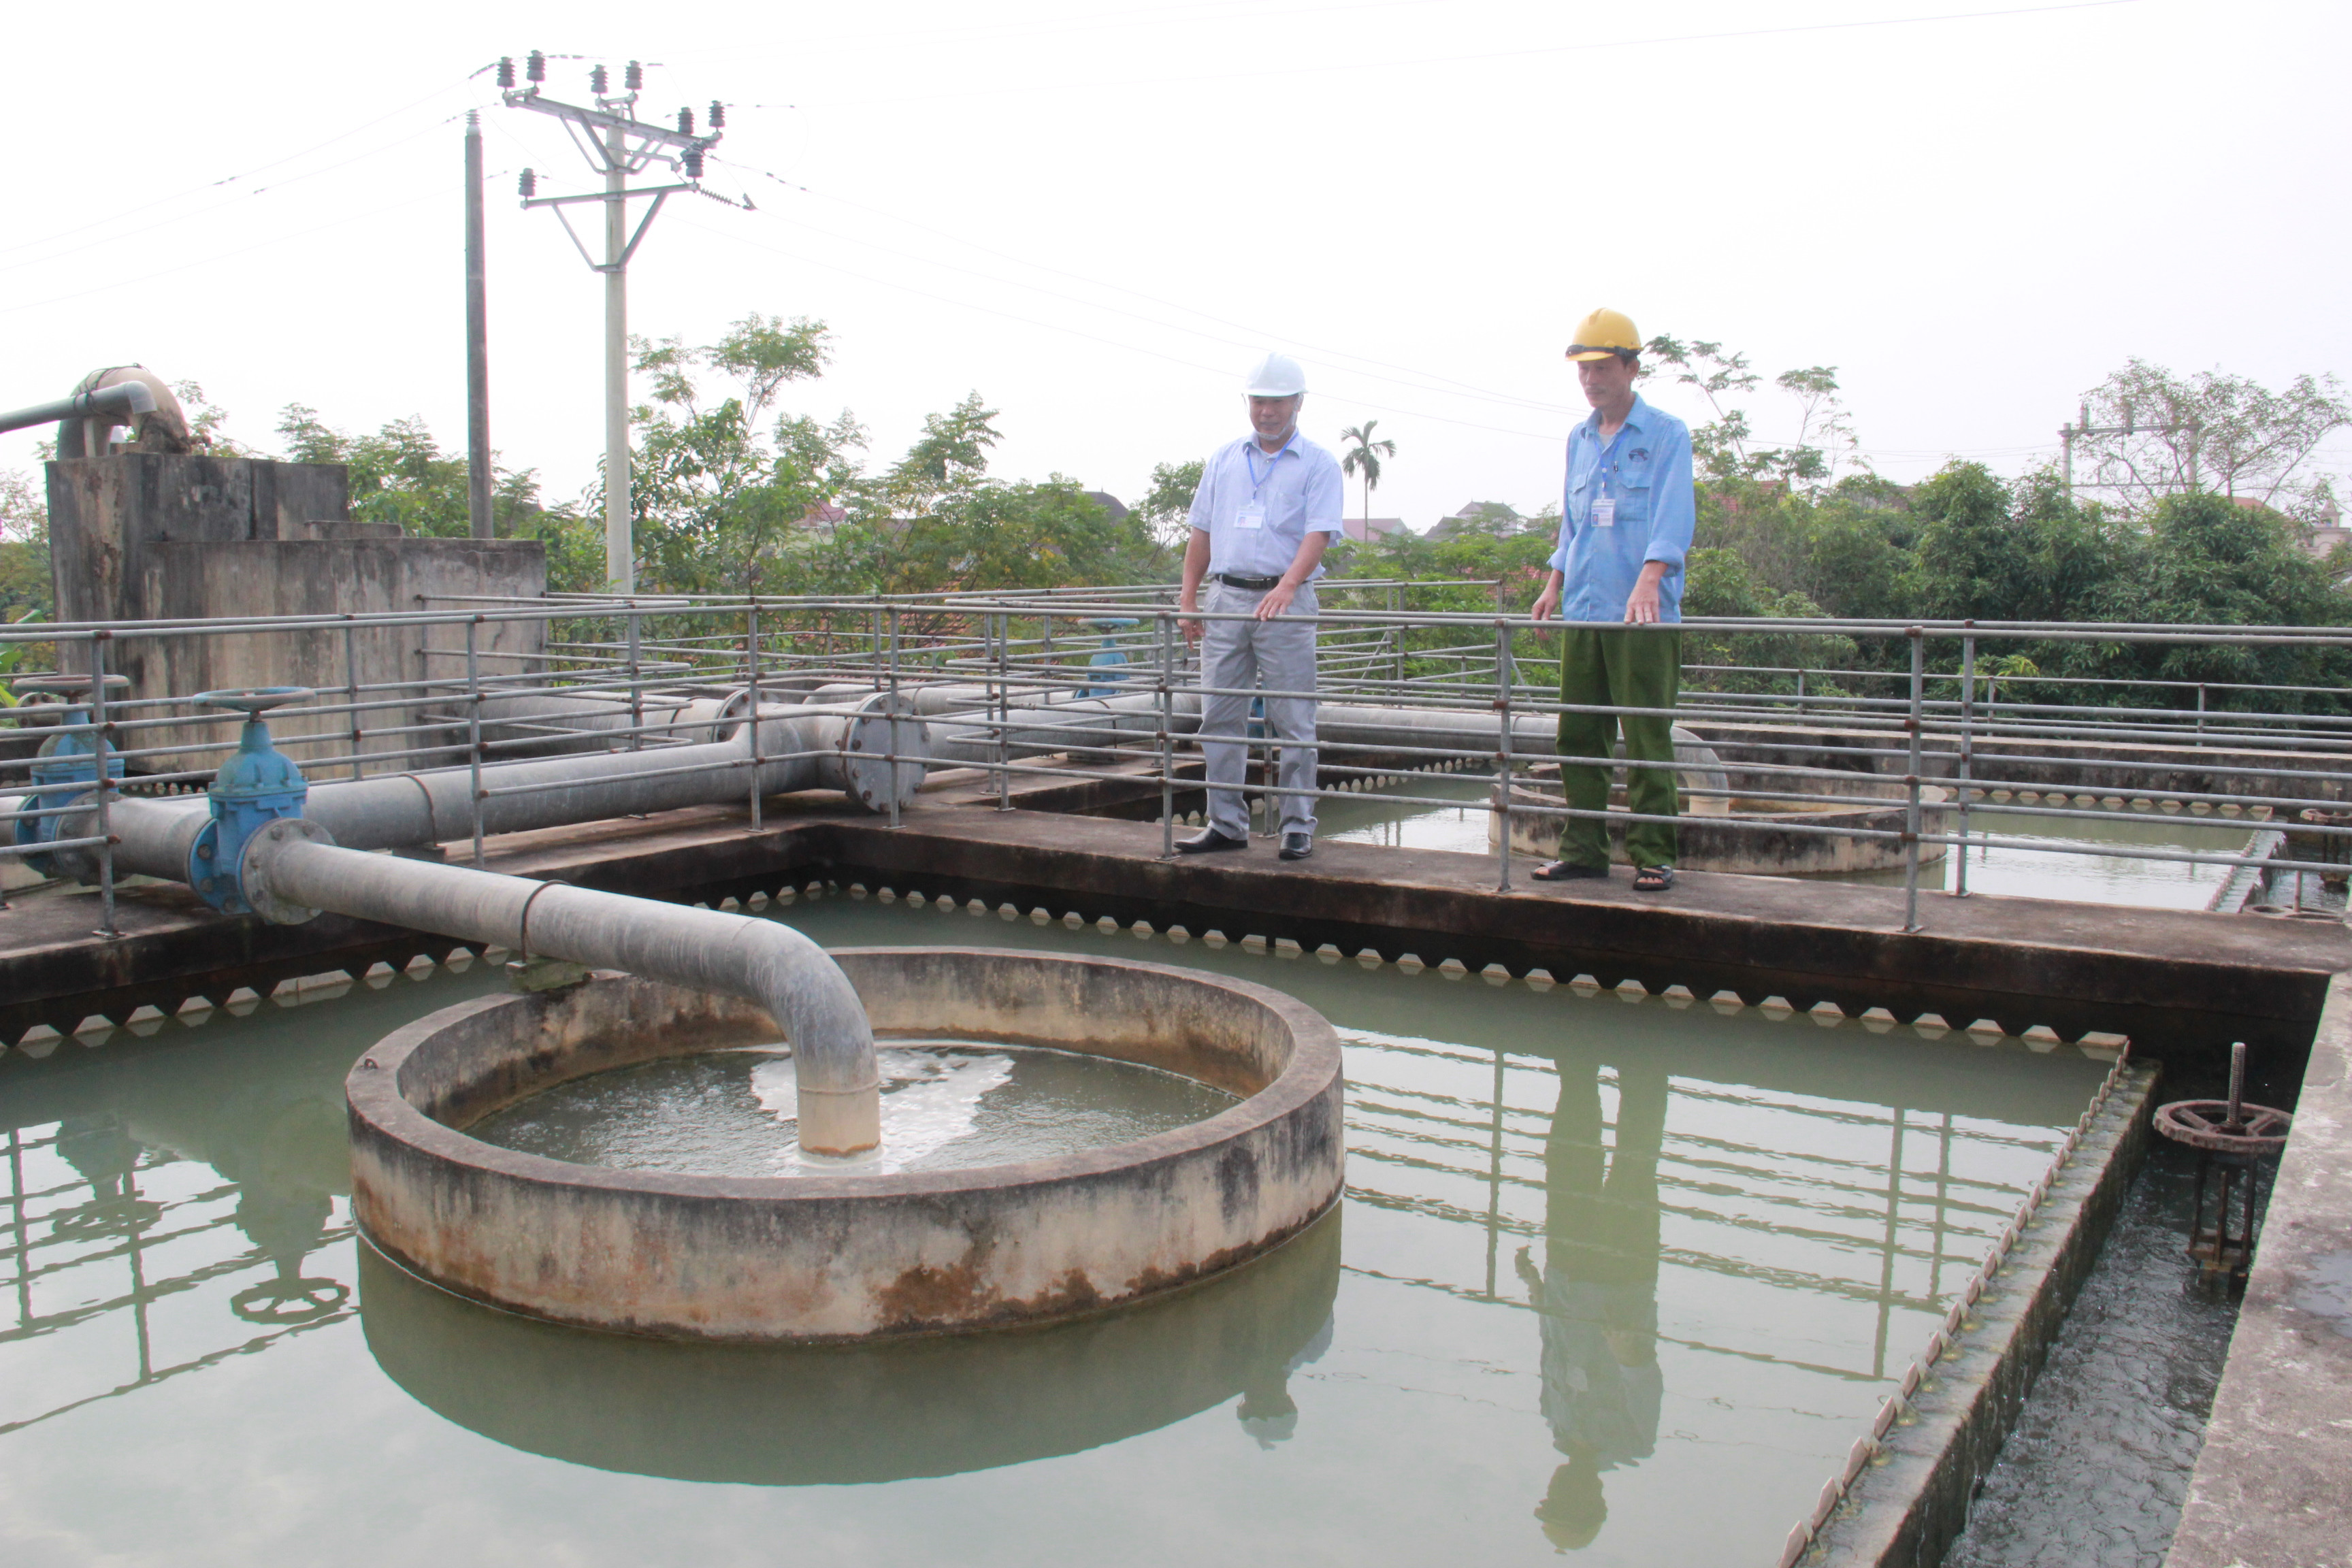 Hệ thống bể hợp khối xử lý nước sạch tại Công ty CP Cấp nước Nghệ An. Ảnh: Hoàng Vĩnh